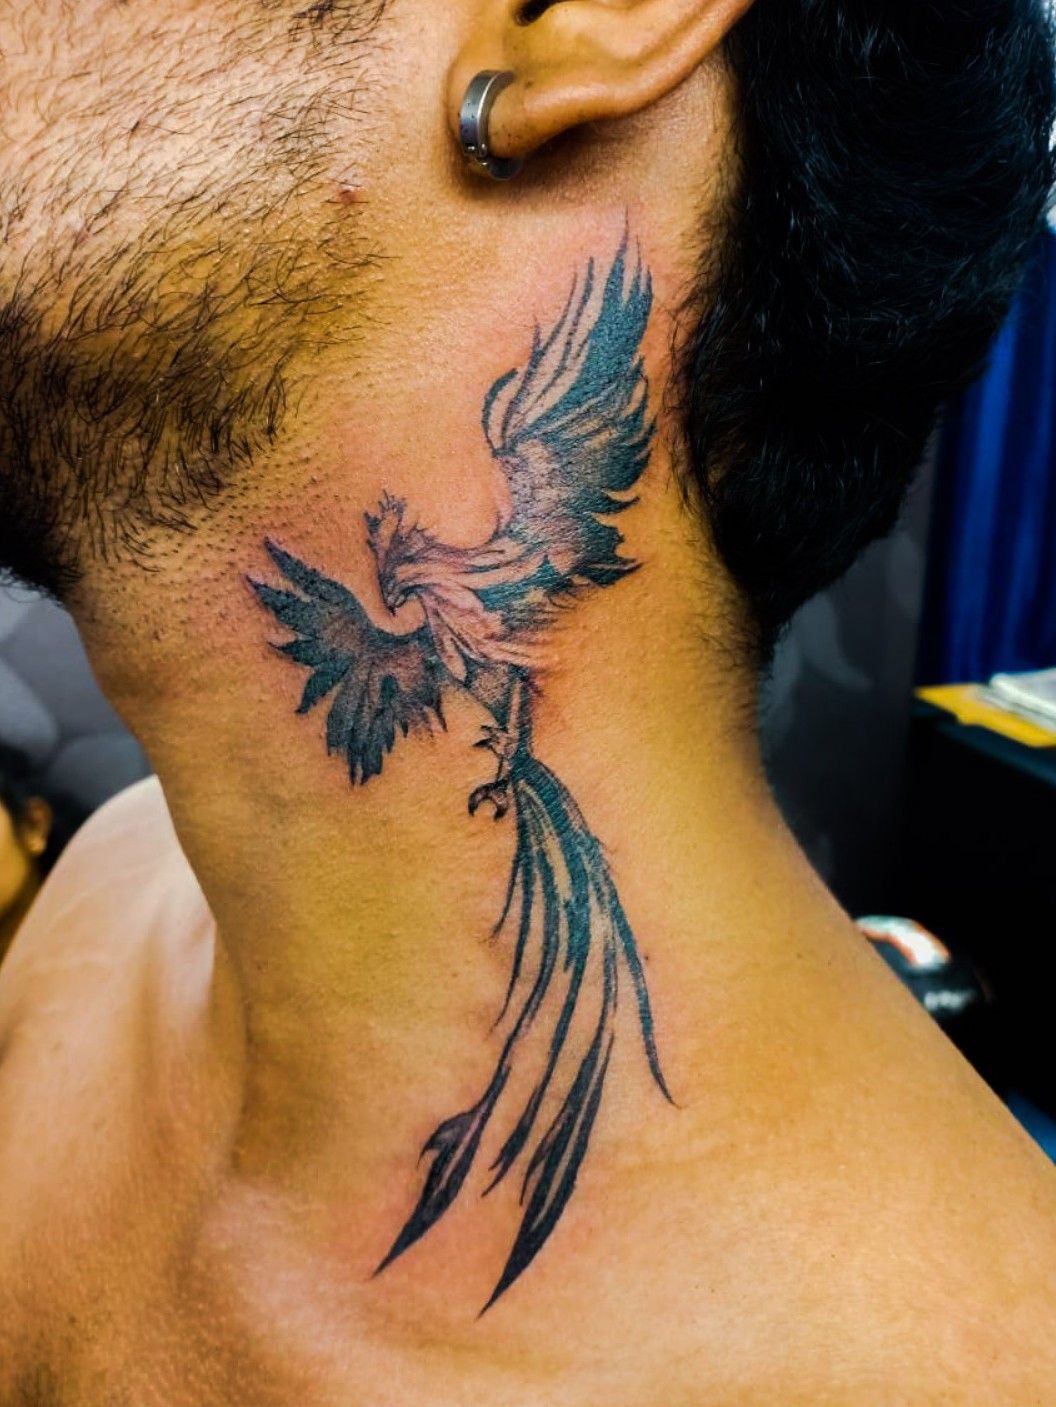 Phoenix Tattoo Ideas  ArtBody Tattoo Designs  Phoenix bird tattoos Phoenix  bird art Phoenix tattoo